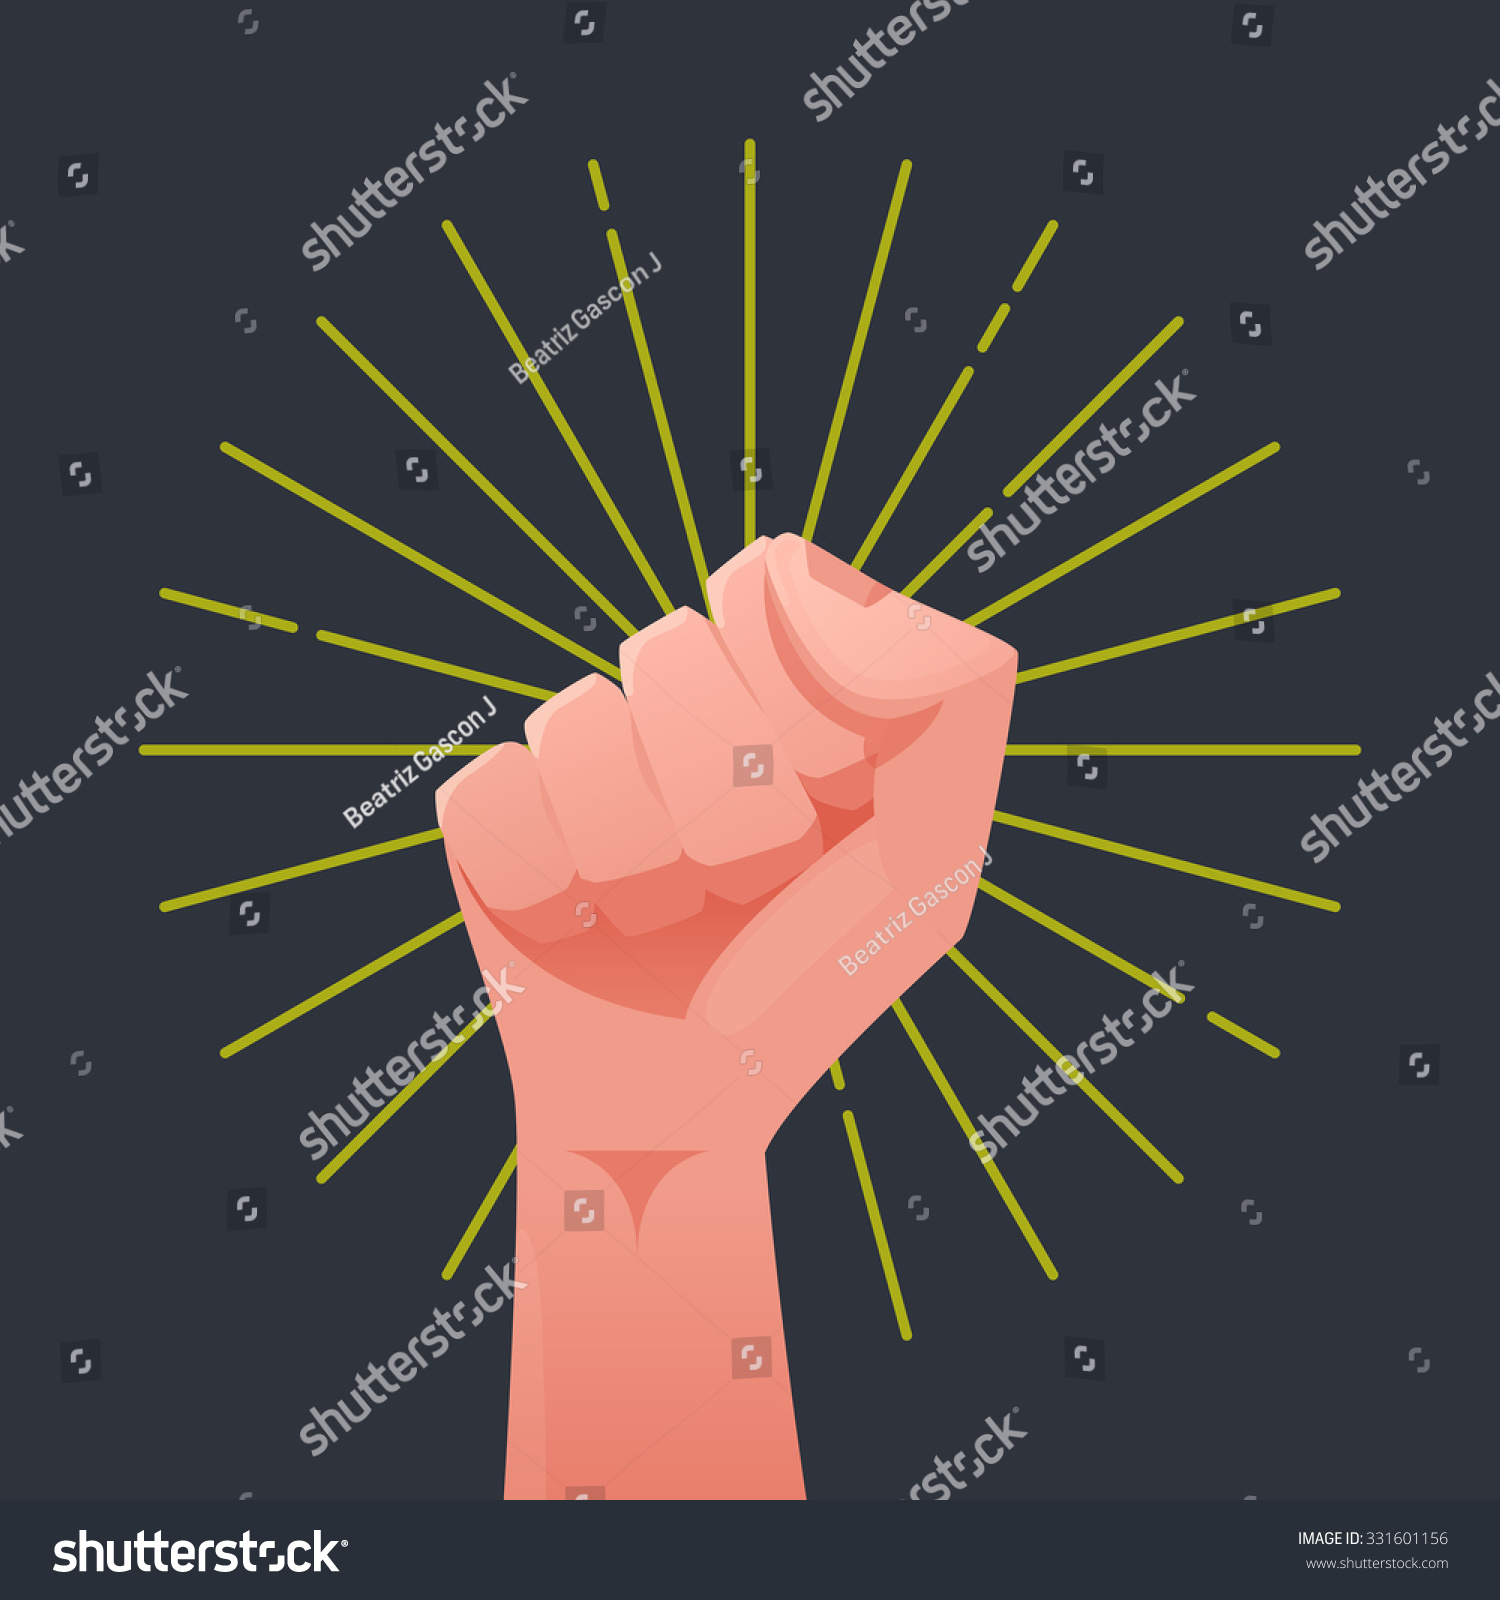 Fist Vector Illustration - 331601156 : Shutterstock